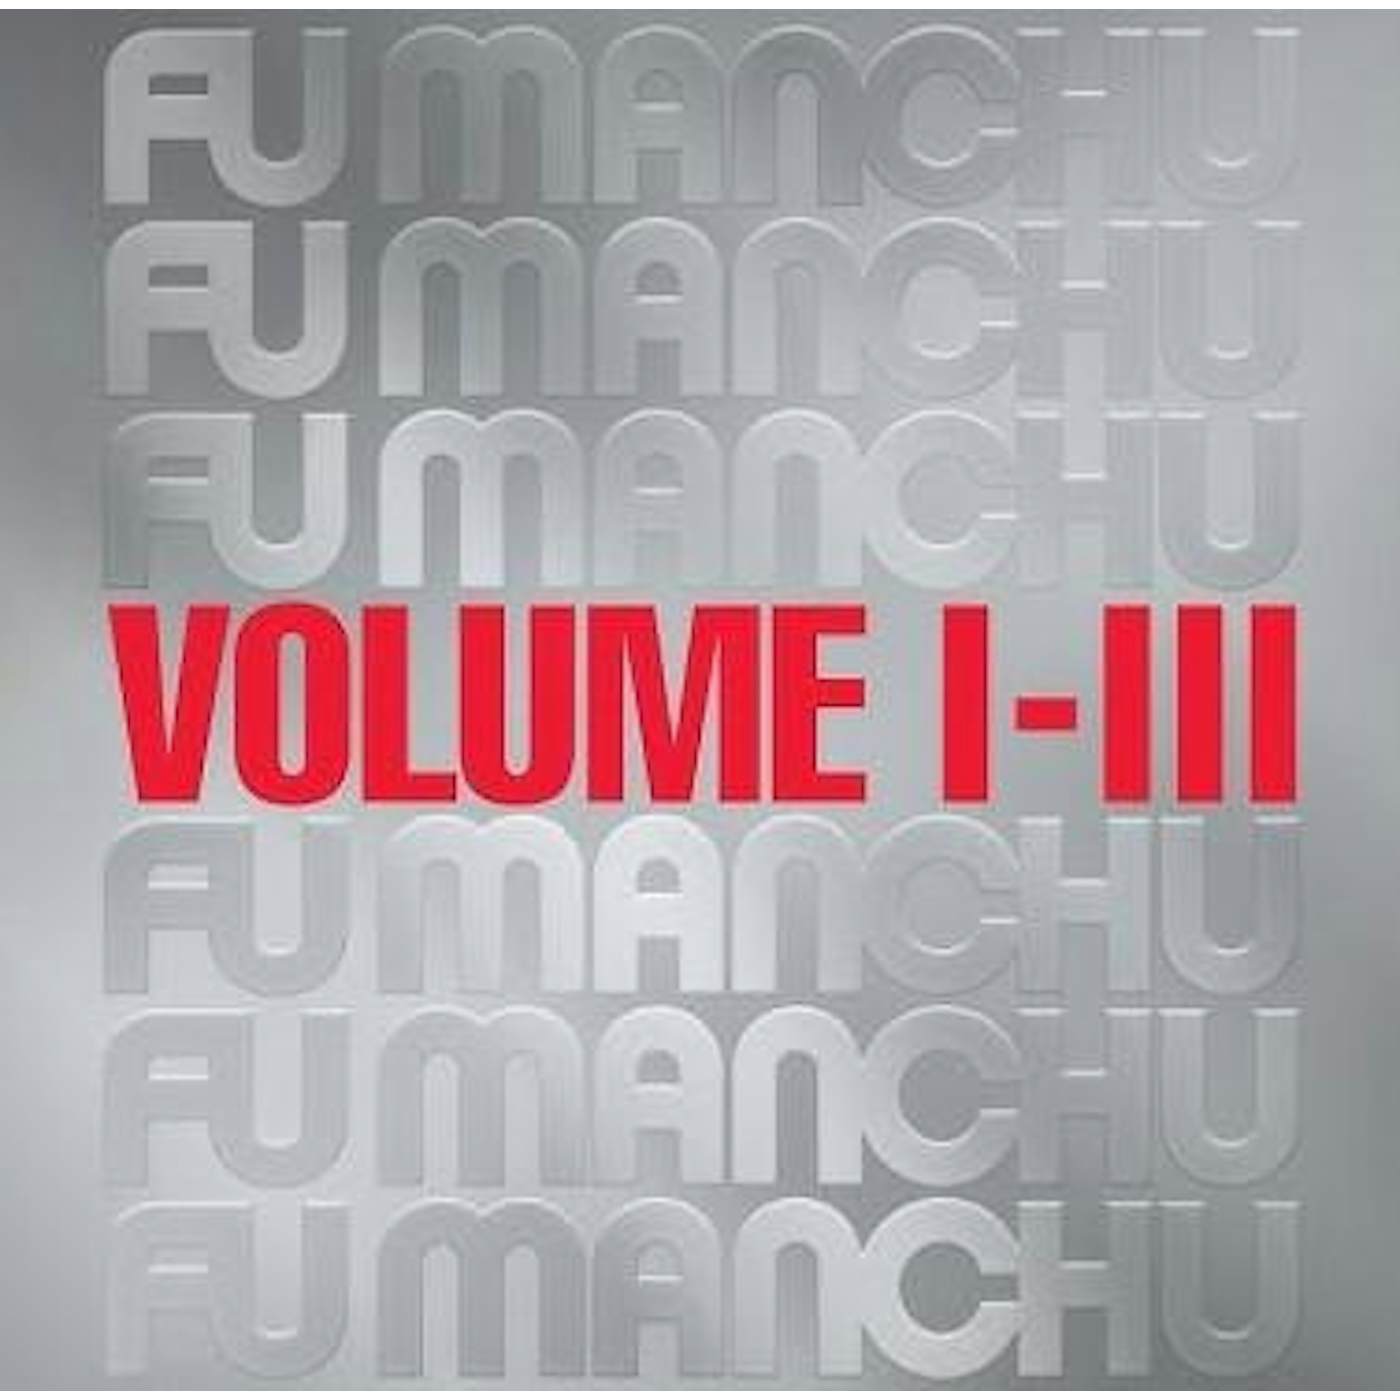 Fu Manchu FU30 VOLUME I-III (EMBOSSED ARTWORK) CD